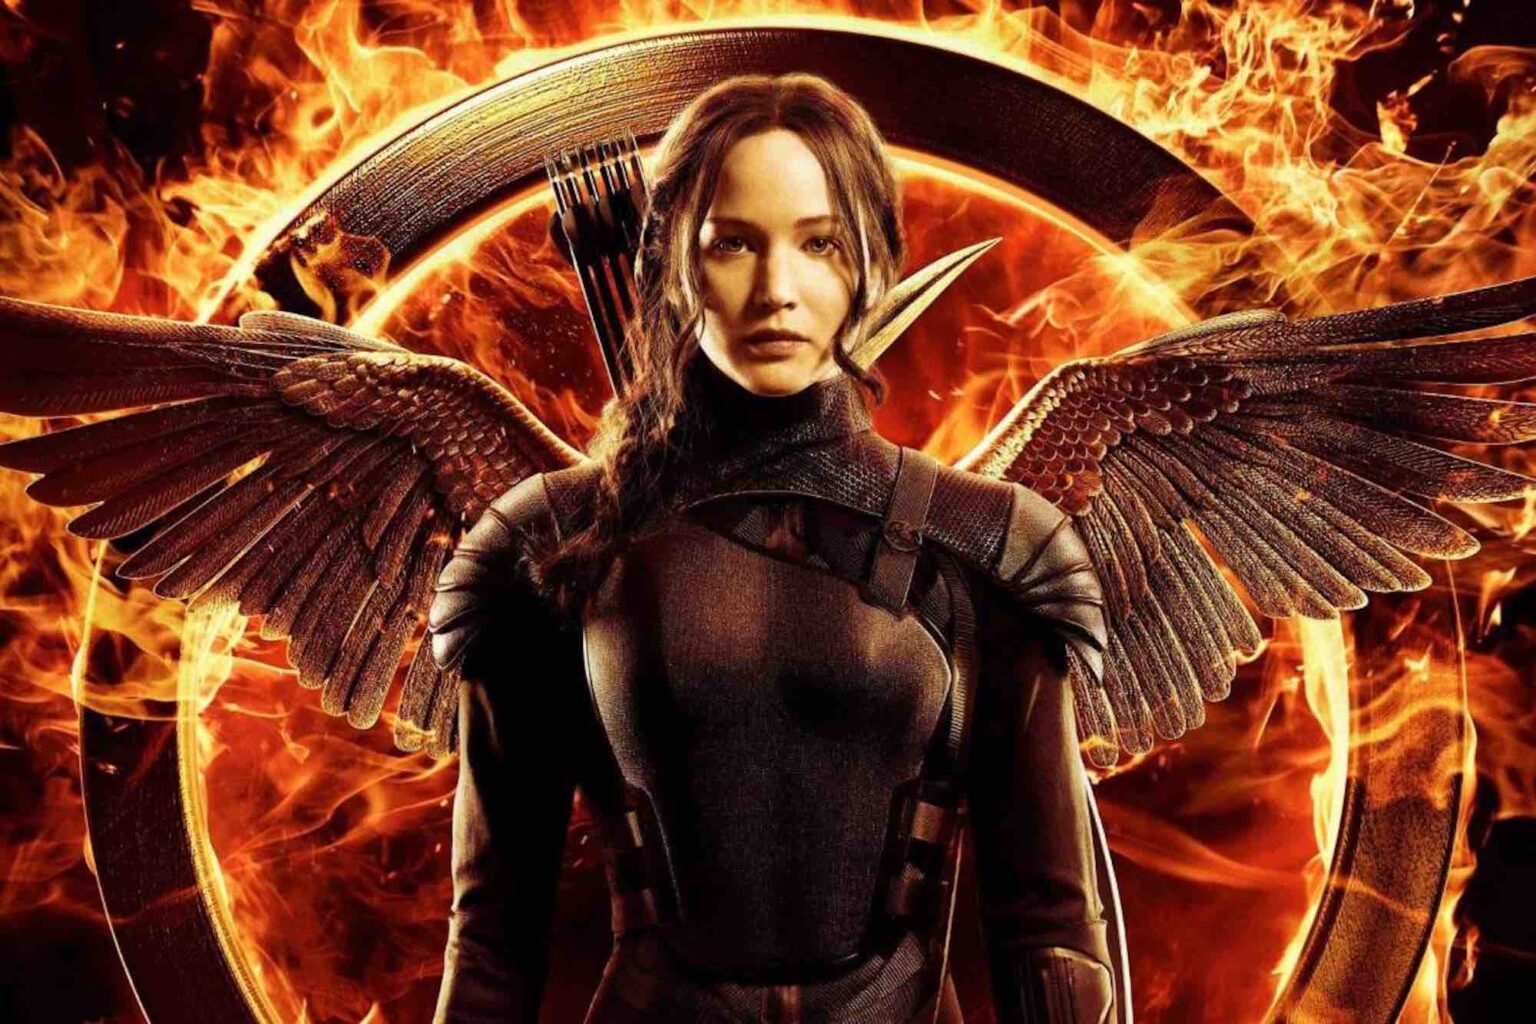 ต้องการสตรีมภาพยนตร์ 'Hunger Games' หรือไม่? ขอให้อัตราต่อรองเป็นที่โปรดปรานของคุณกับสถานที่ฟรีเหล่านี้เพื่อสตรีมแฟรนไชส์